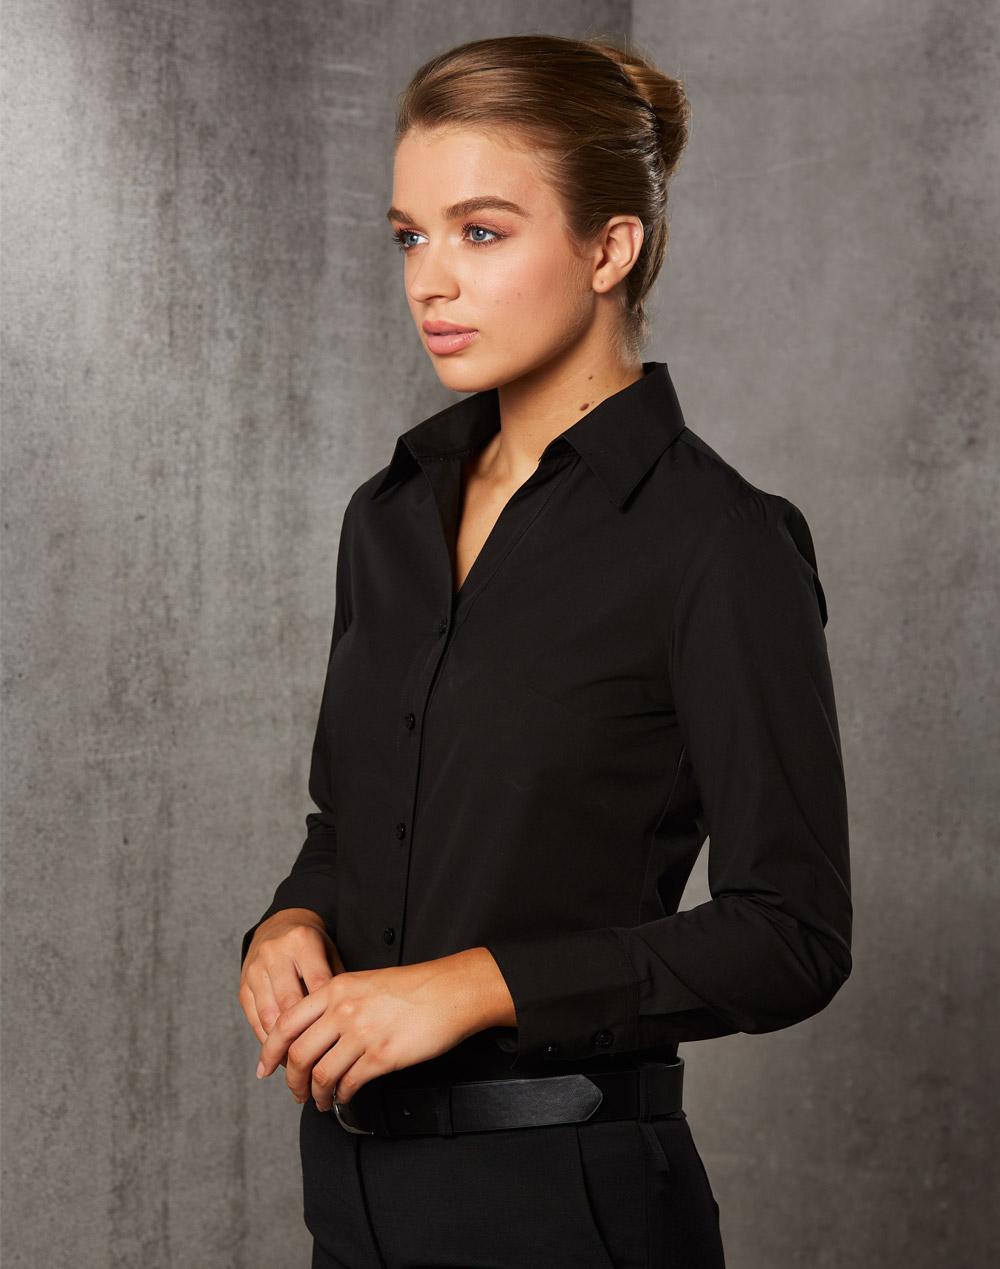 Benchmark M8002 Women's Nano Tech Long Sleeve Shirt